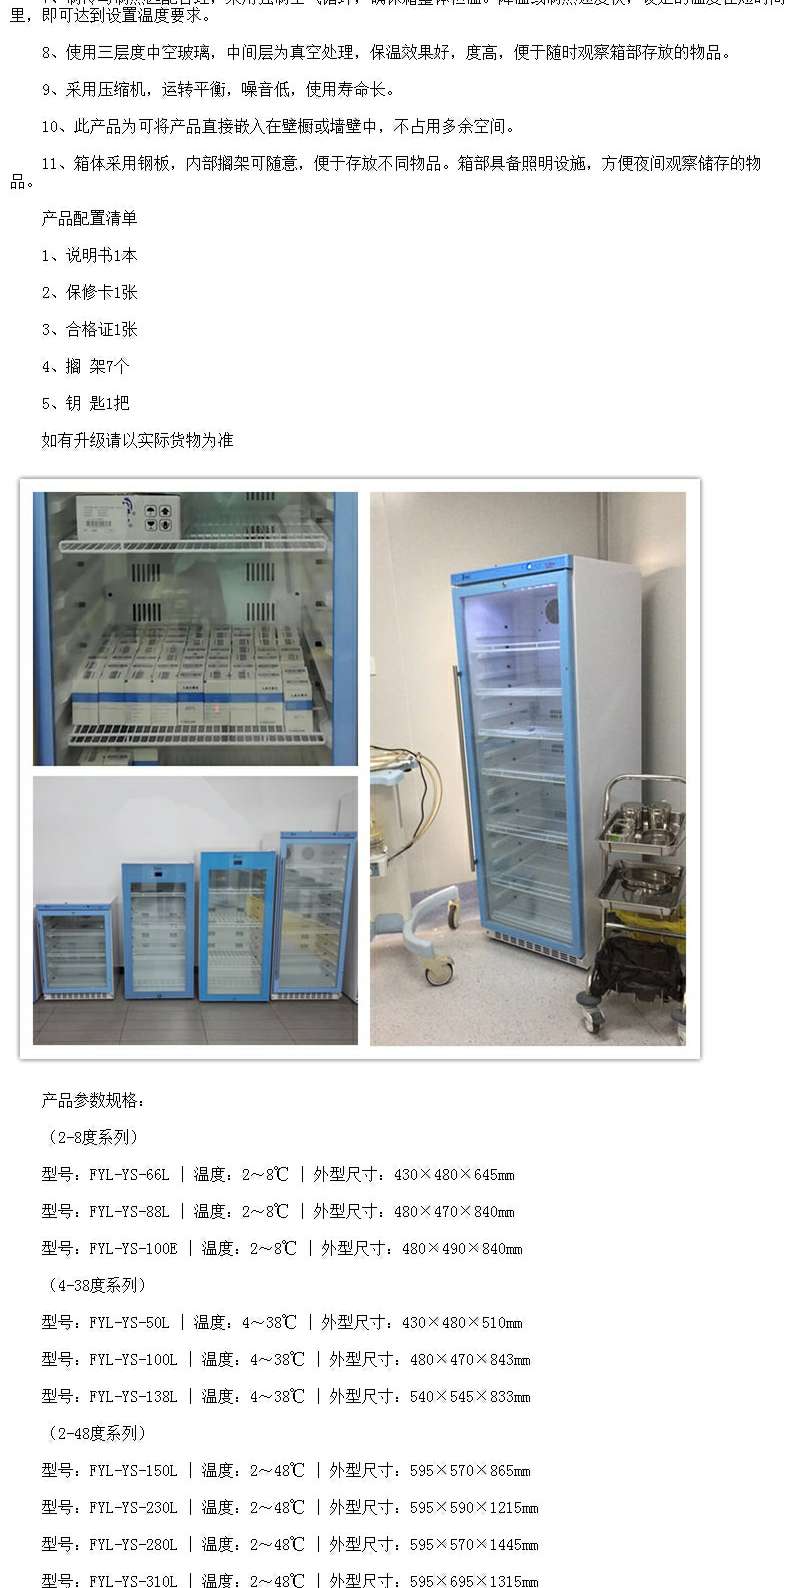 10-30度常温药品冰箱福意联FYL-YS-138L